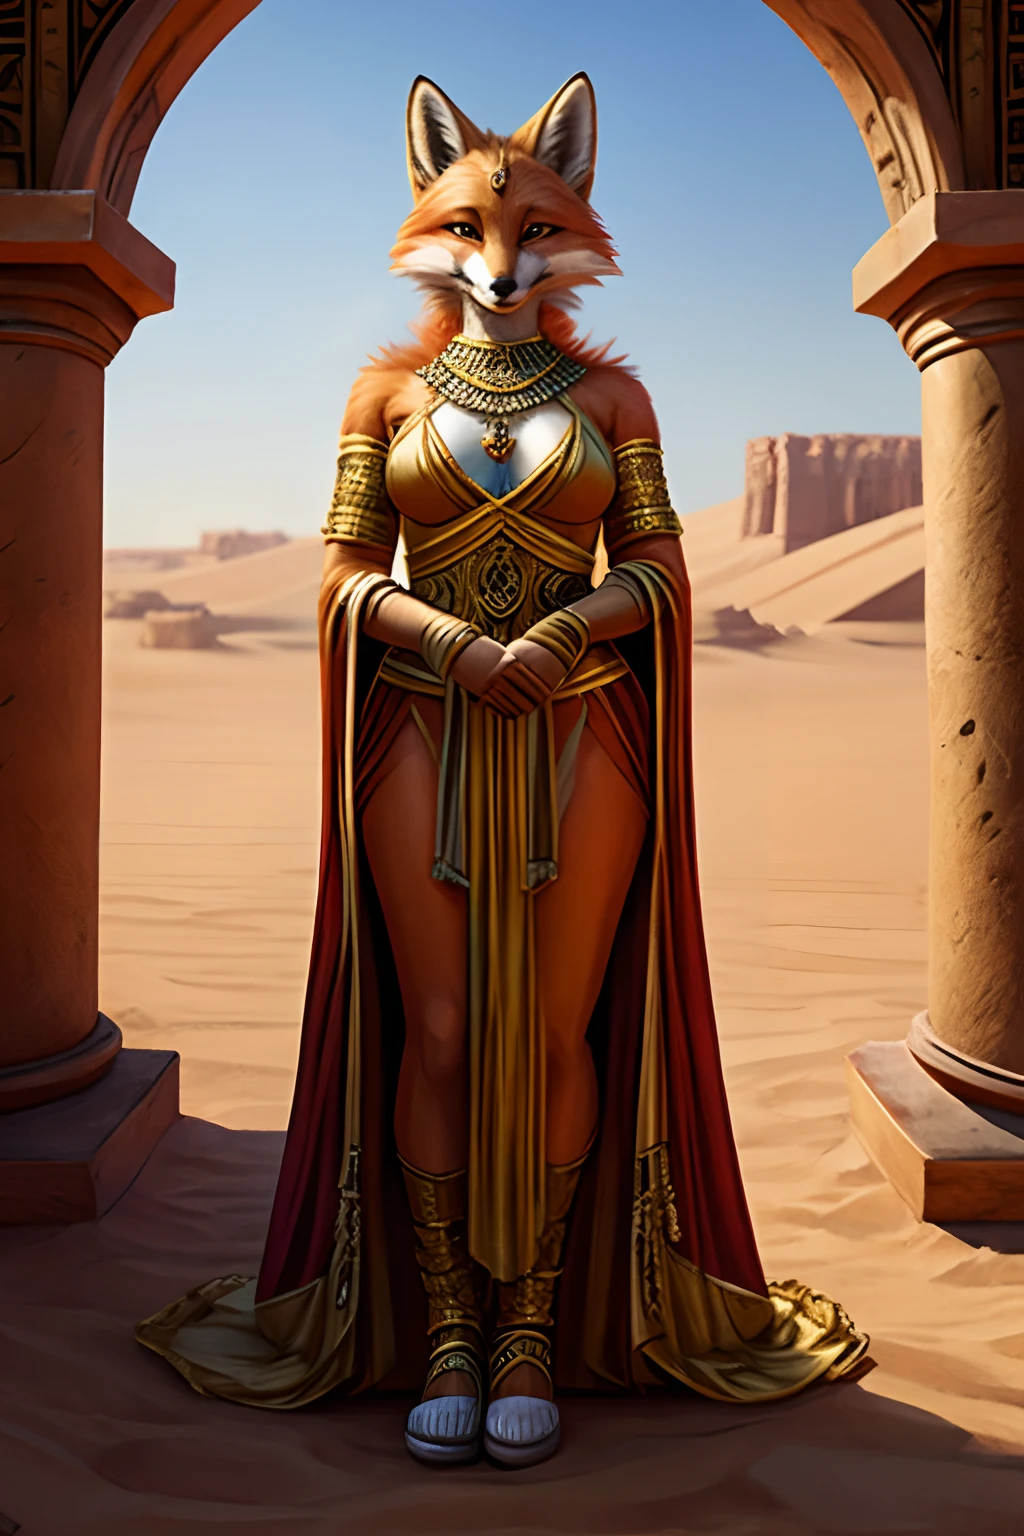 ملكة ثعلب رزينة ذات عقل منحرف ترتدي ملابس ملكية كاشفة تناسب مملكة في الصحراء